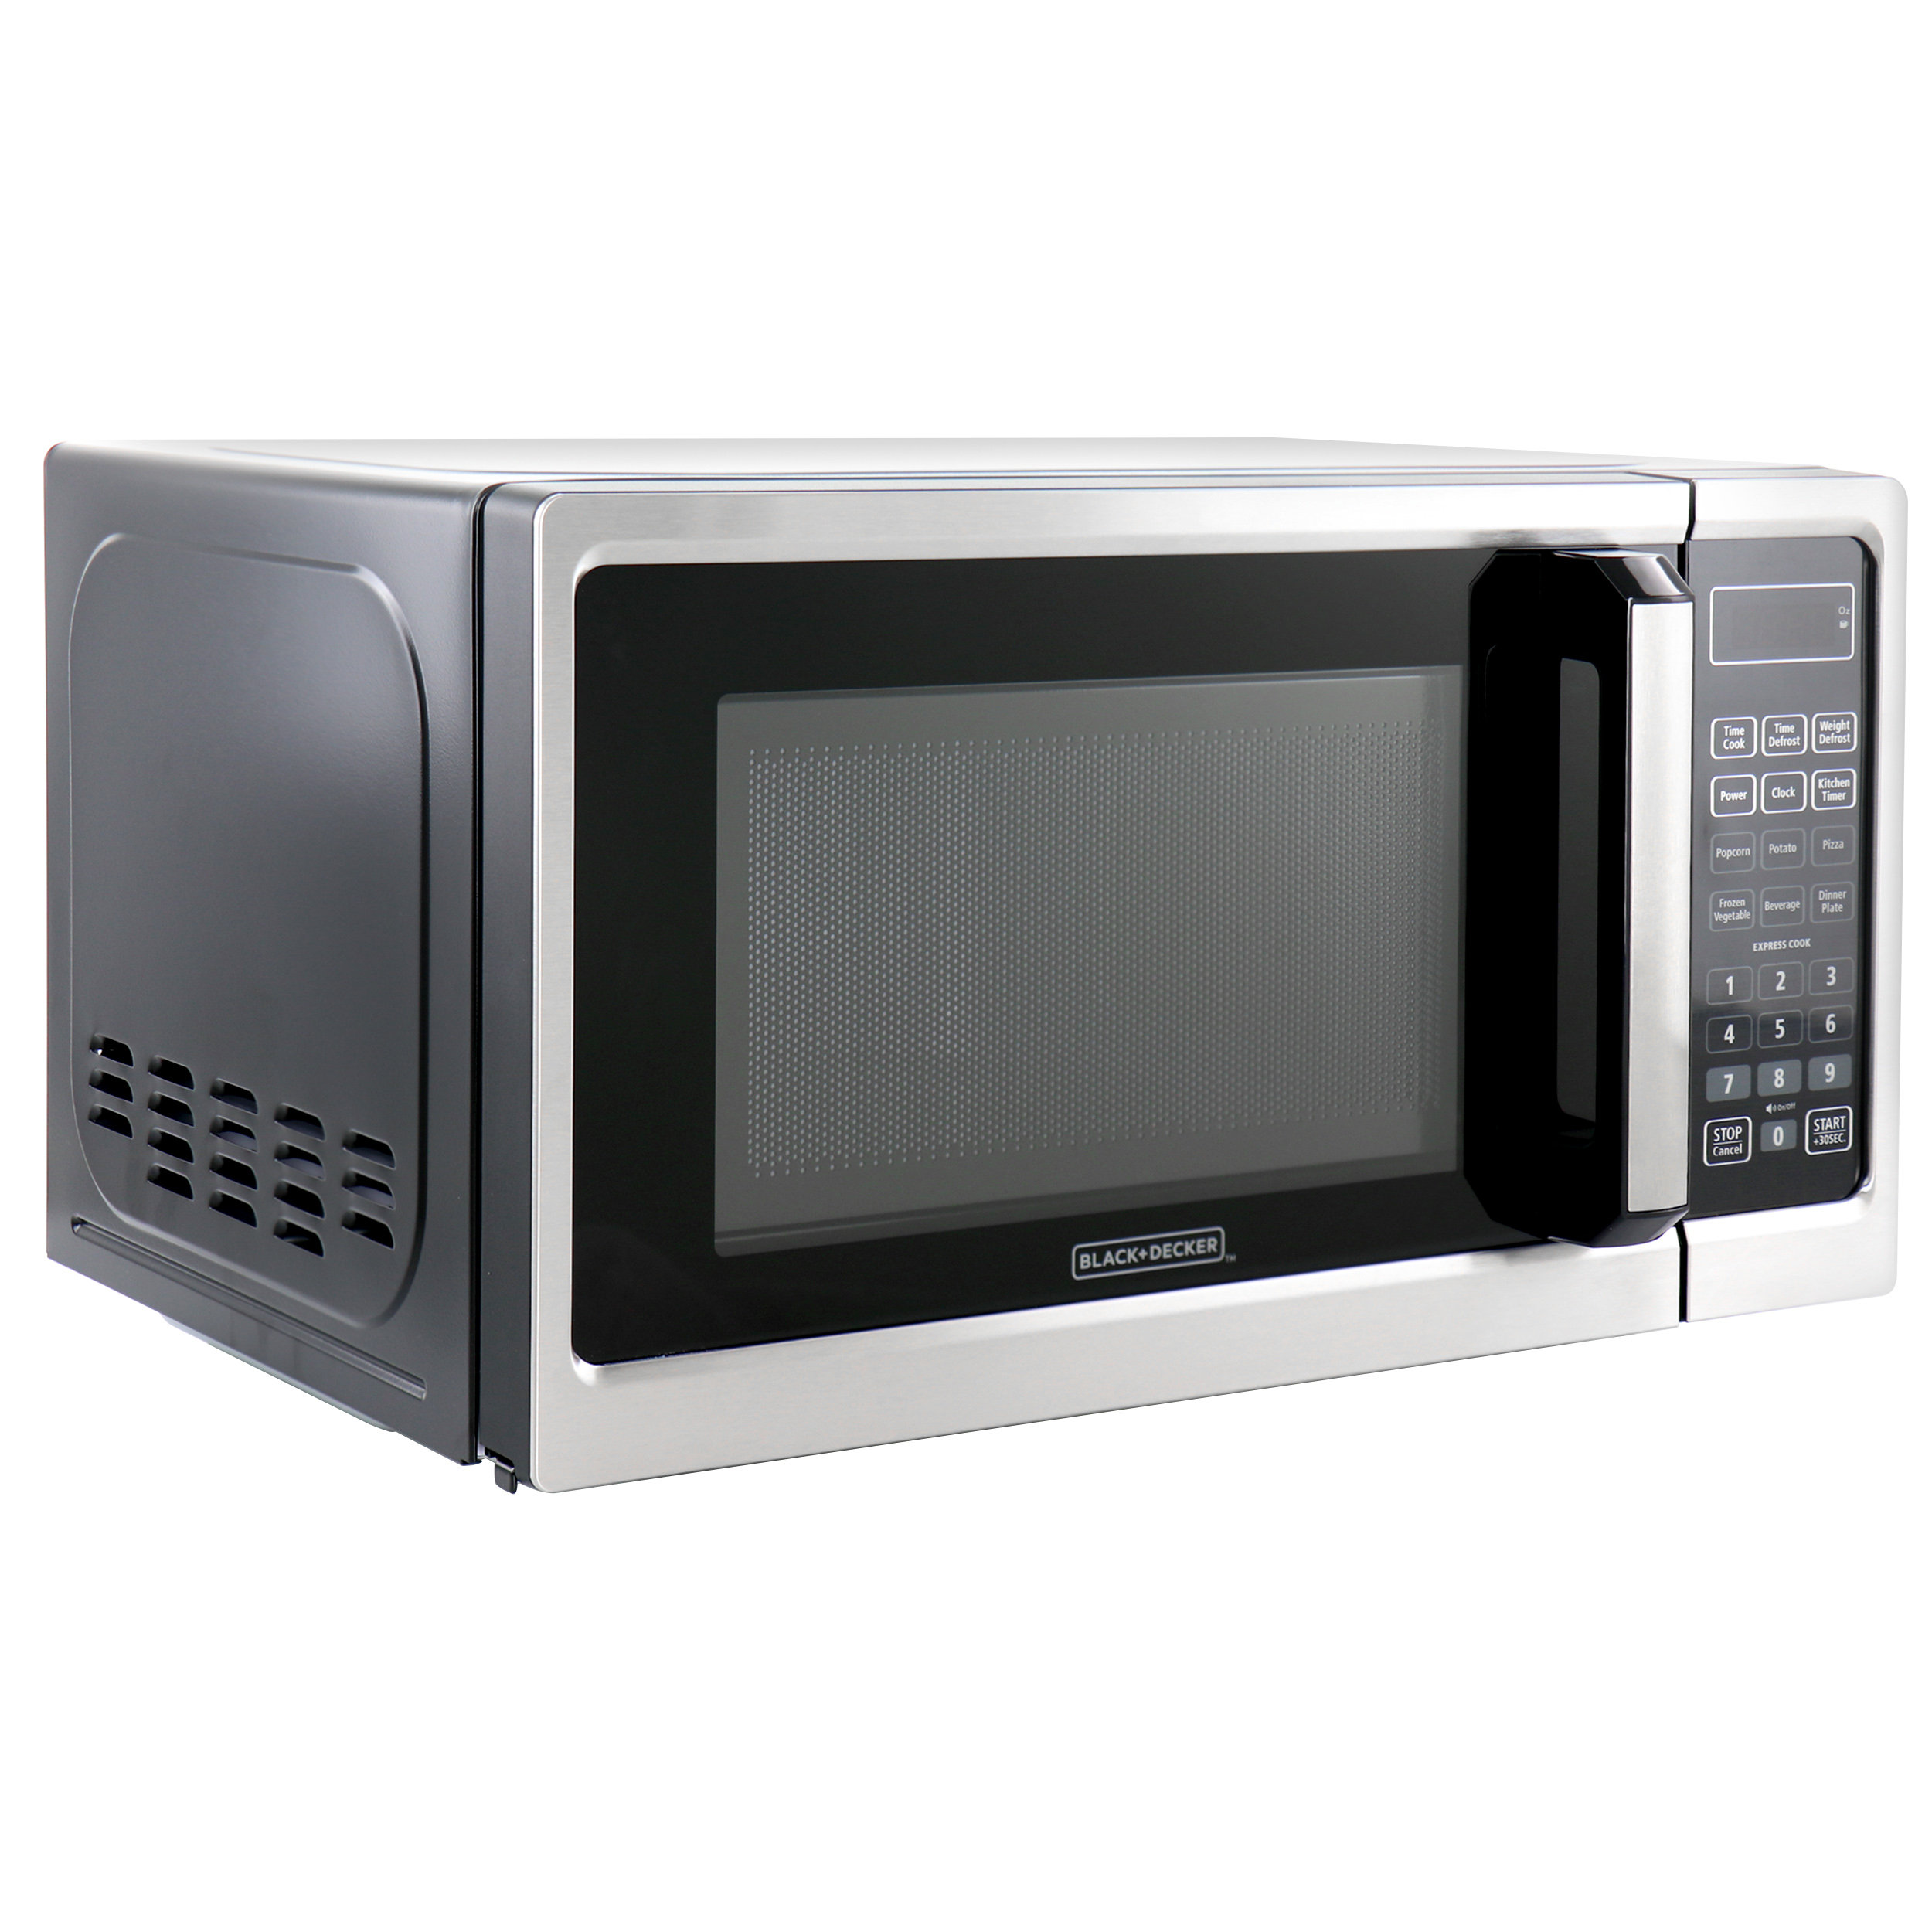 https://assets.wfcdn.com/im/34869717/compr-r85/2284/228407613/blackdecker-09-cubic-feet-countertop-microwave.jpg